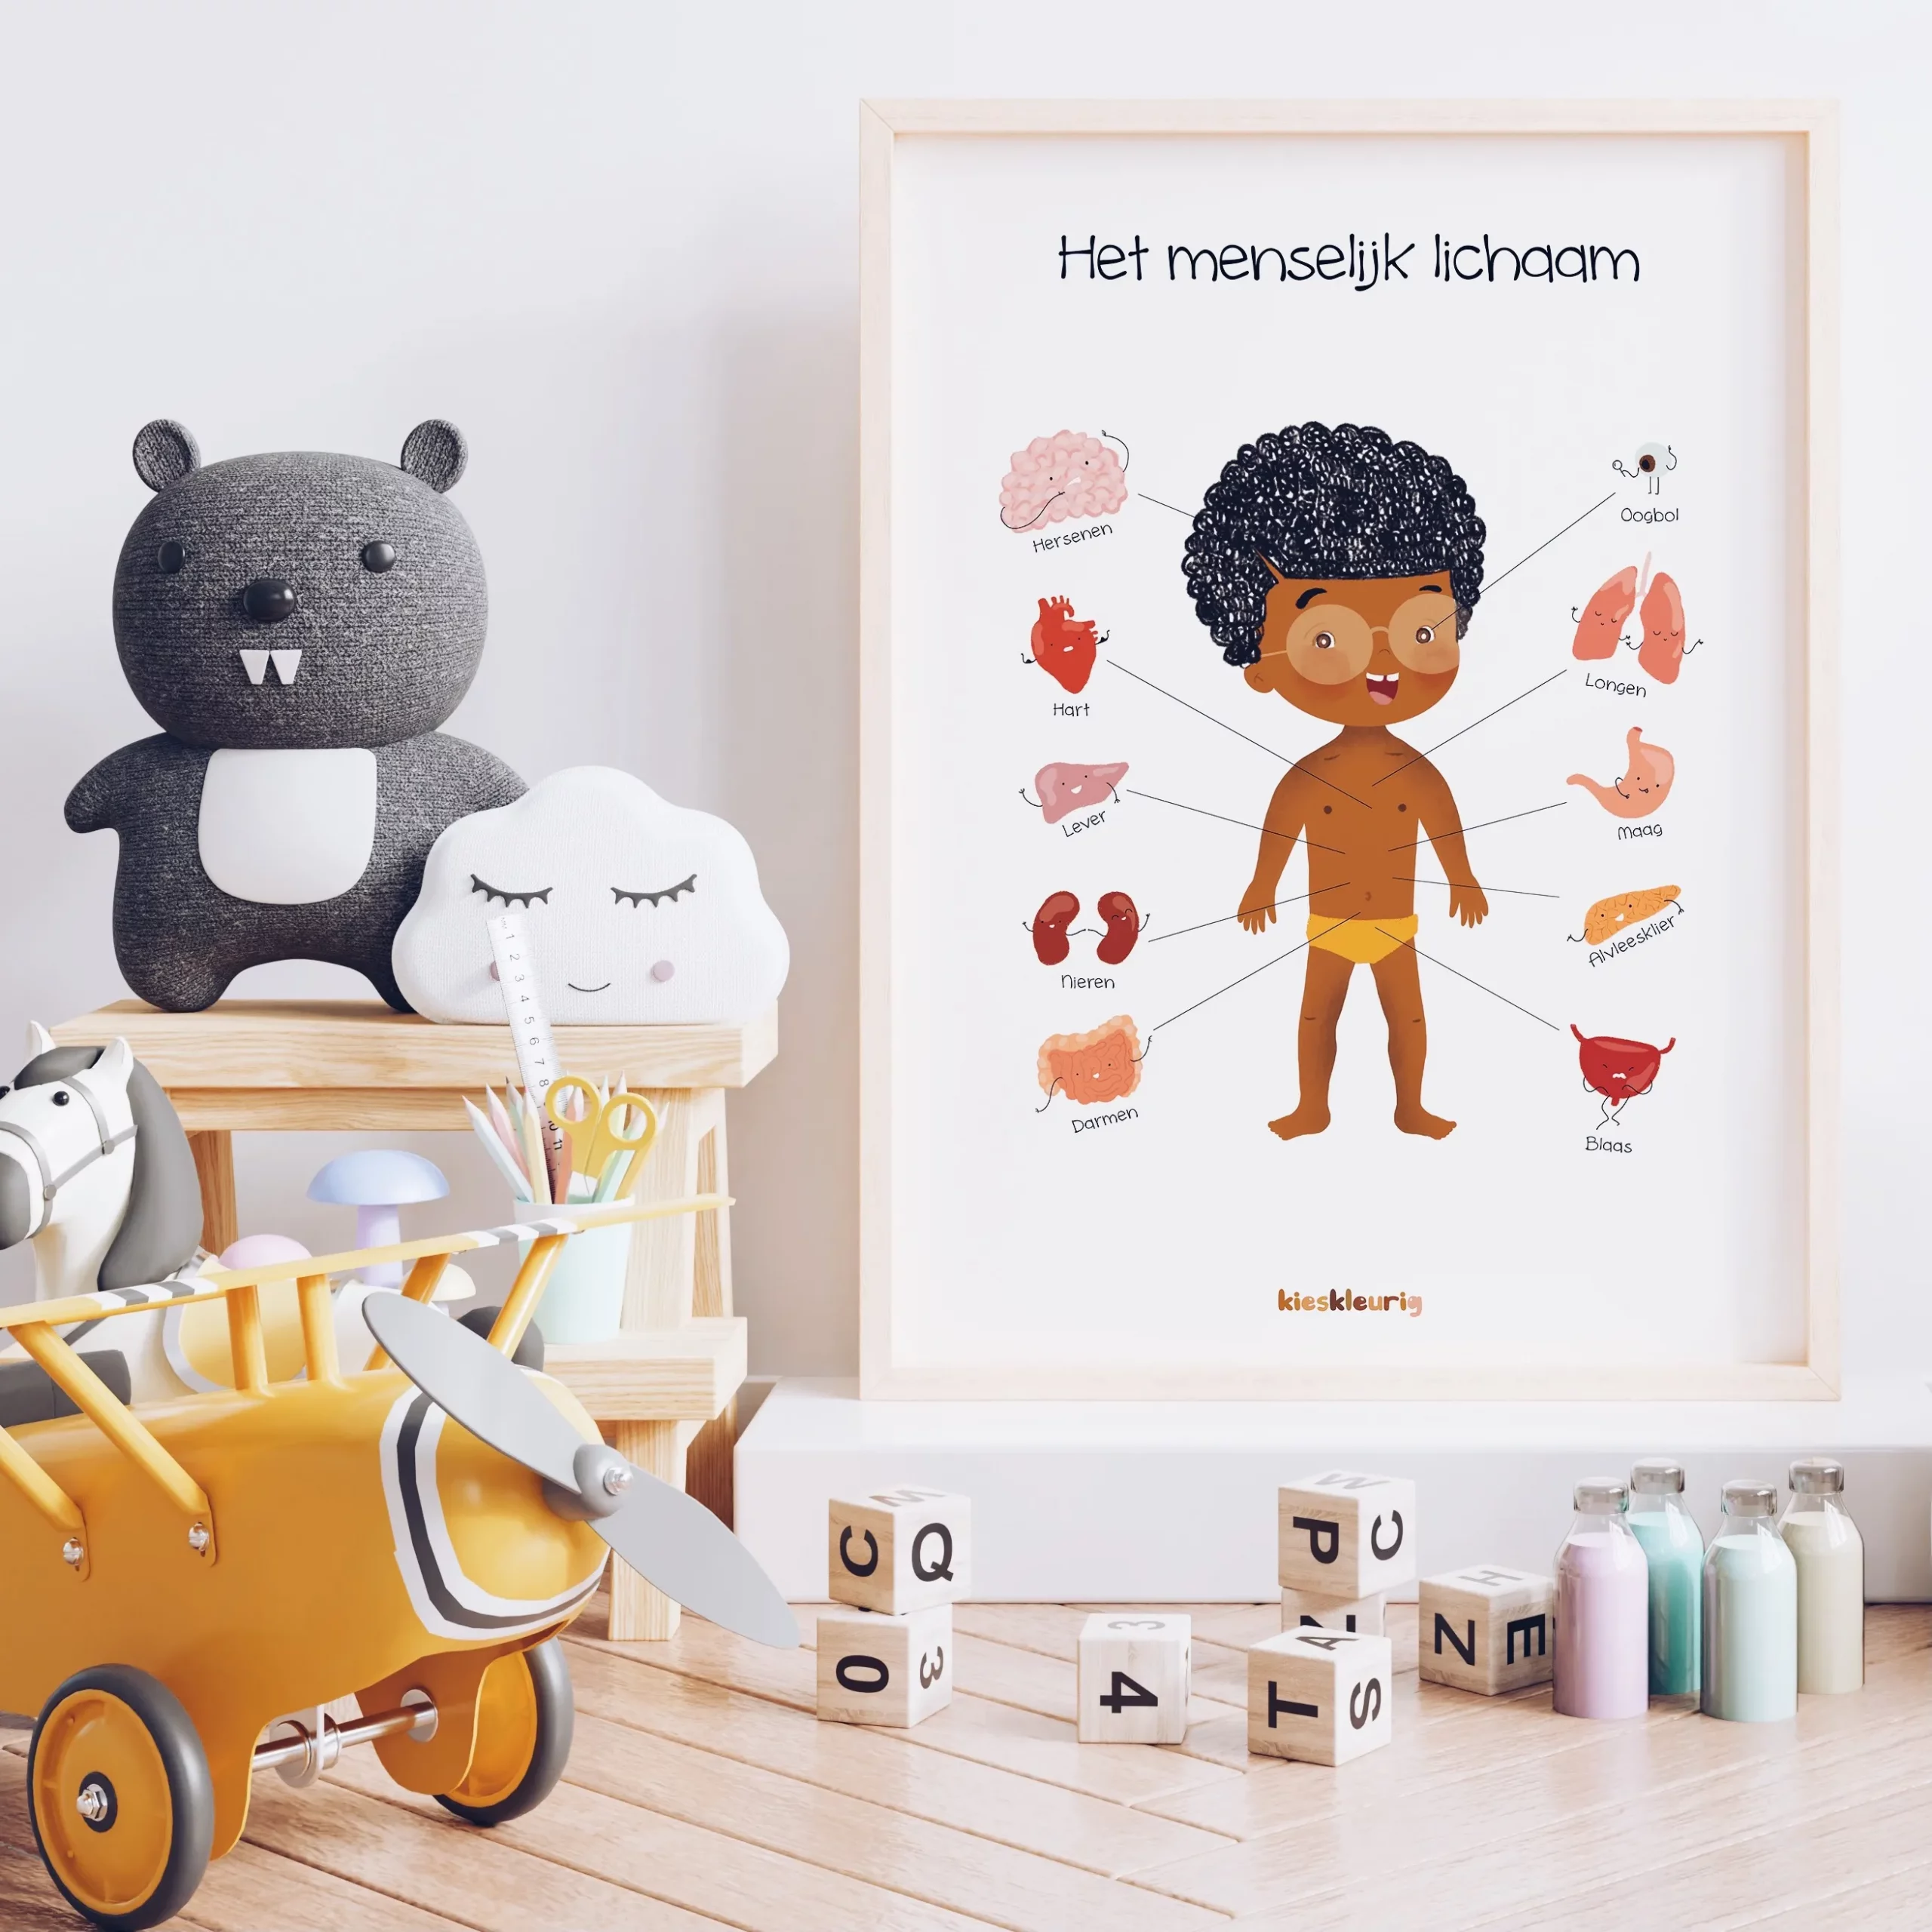 Kieskleurig Educatieve Poster - Het menselijk lichaam - jongen